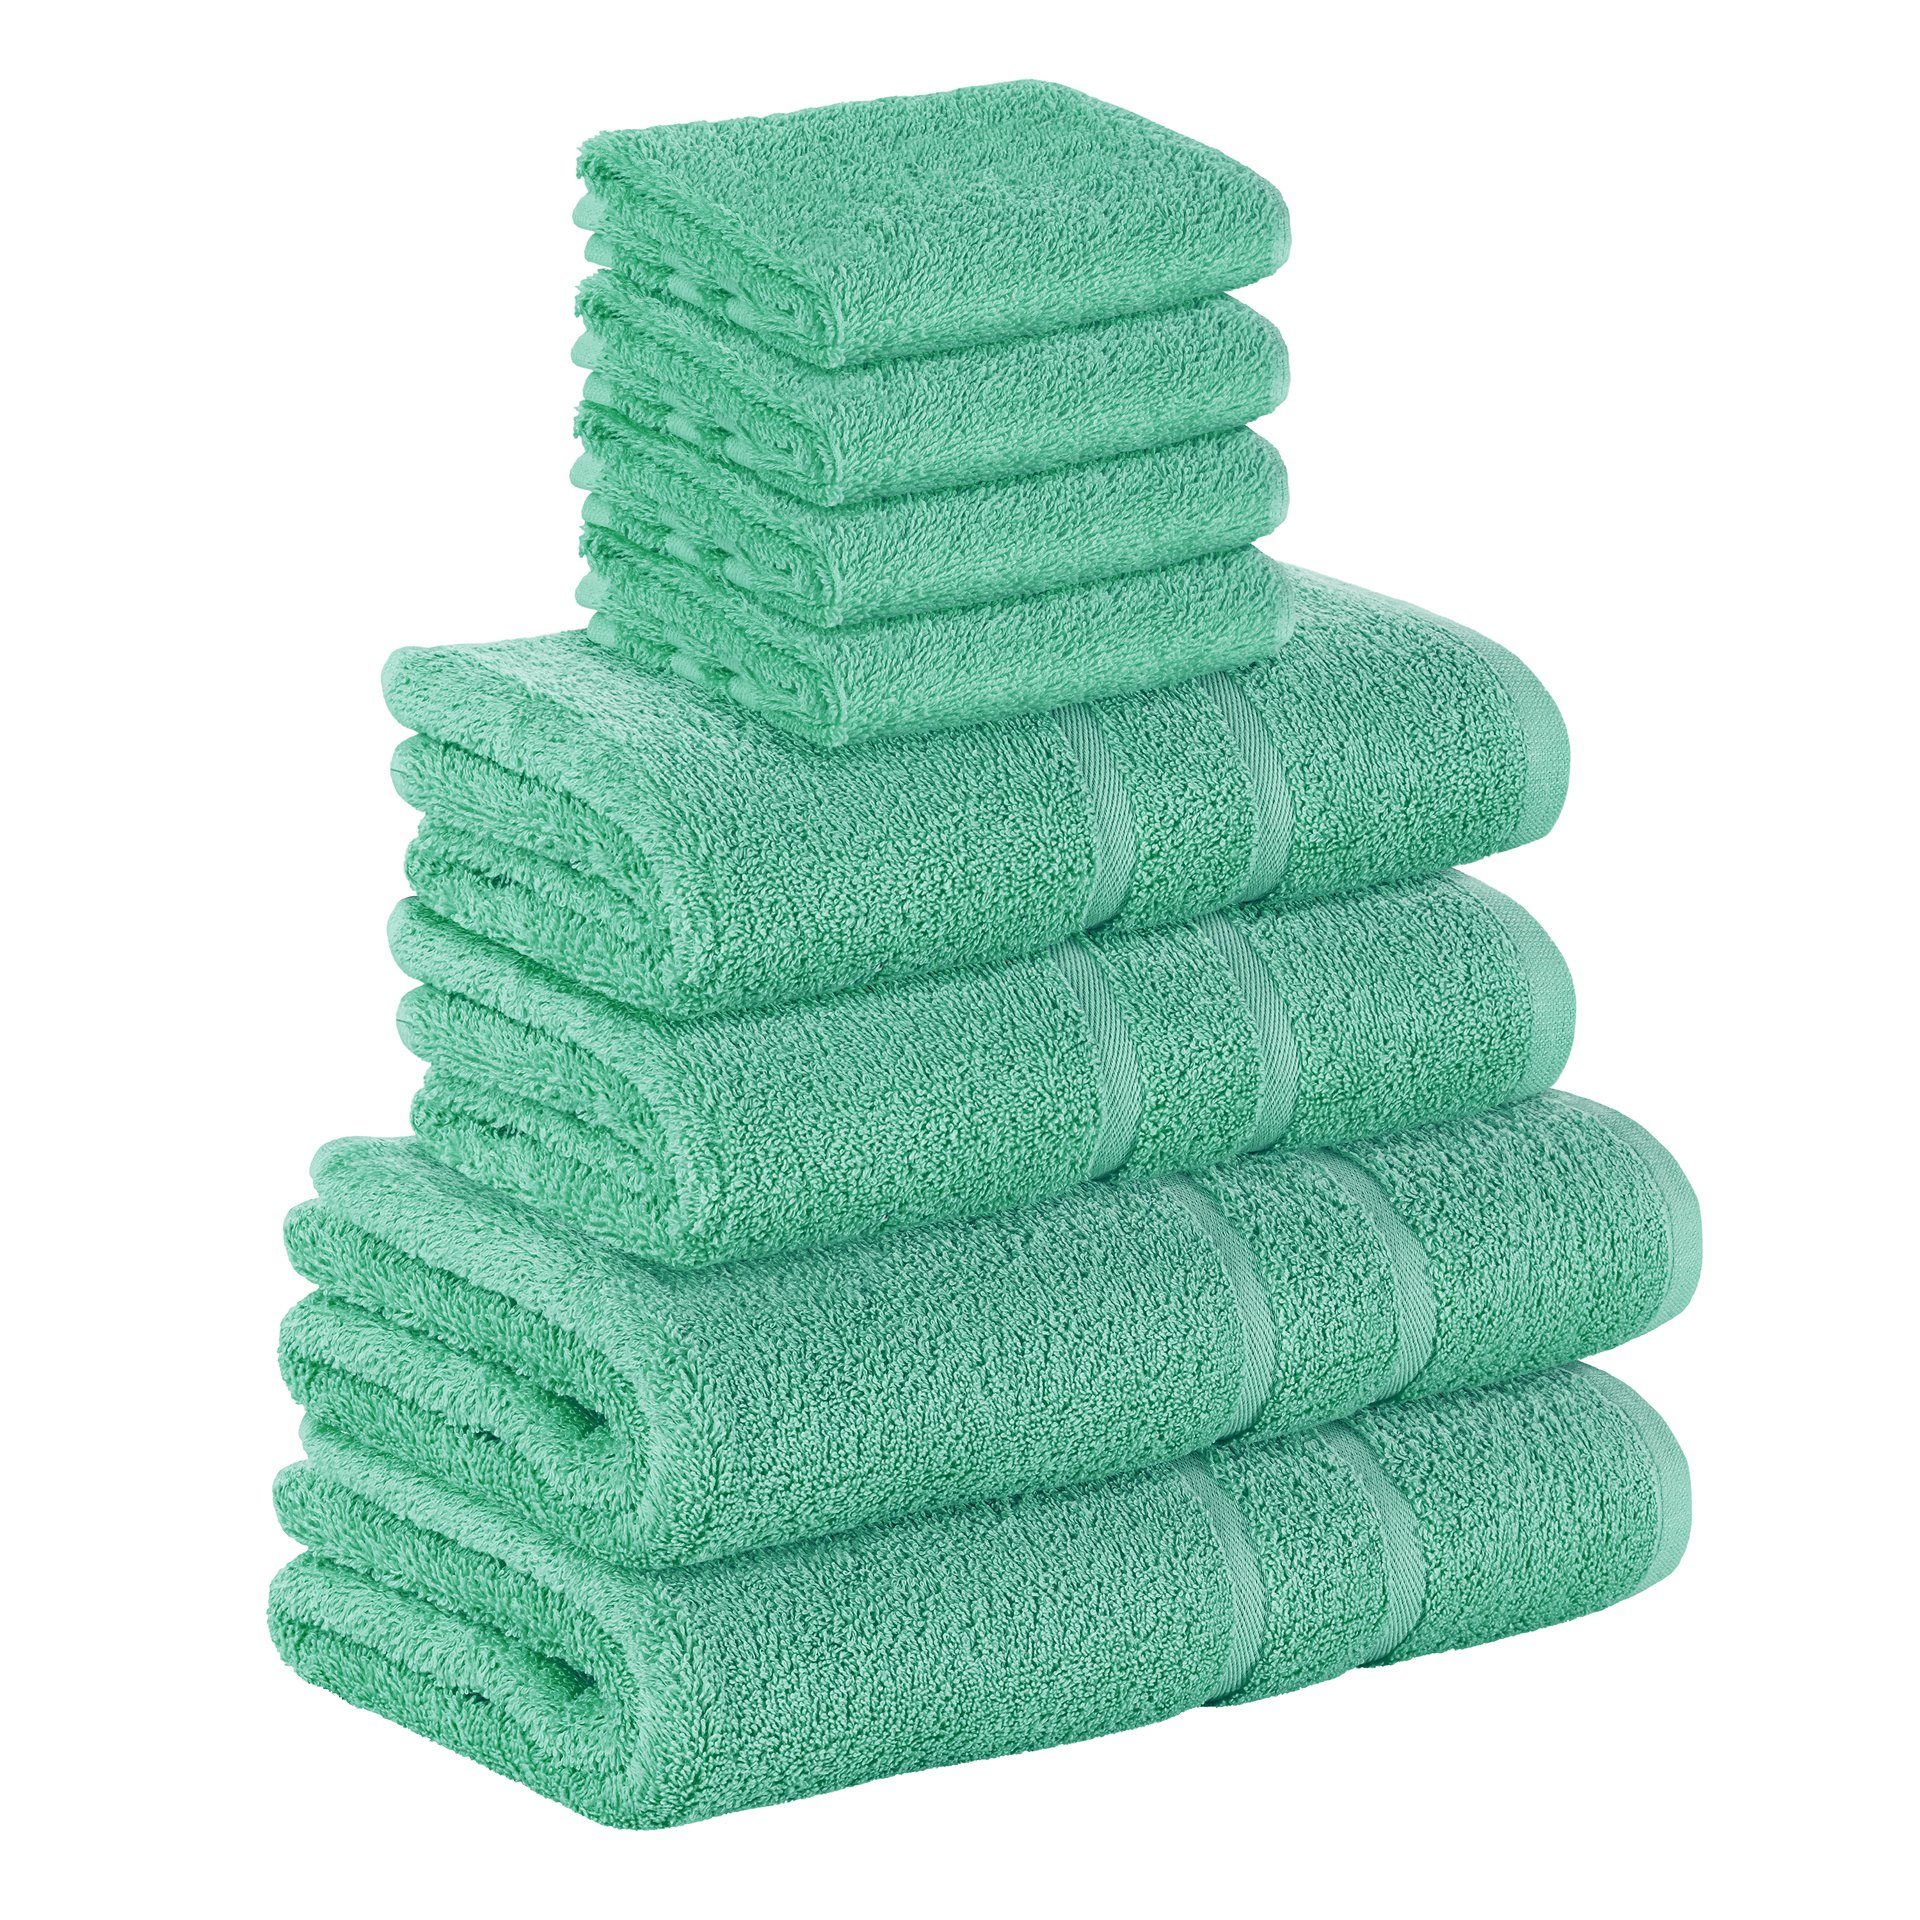 StickandShine Handtuch Set 4x Gästehandtuch 2x Handtücher 2x Duschtücher als SET in verschiedenen Farben (8 Teilig) 100% Baumwolle 500 GSM Frottee 8er Handtuch Pack, (Spar-set), 100% Baumwolle 500 GSM Smaragdgrün